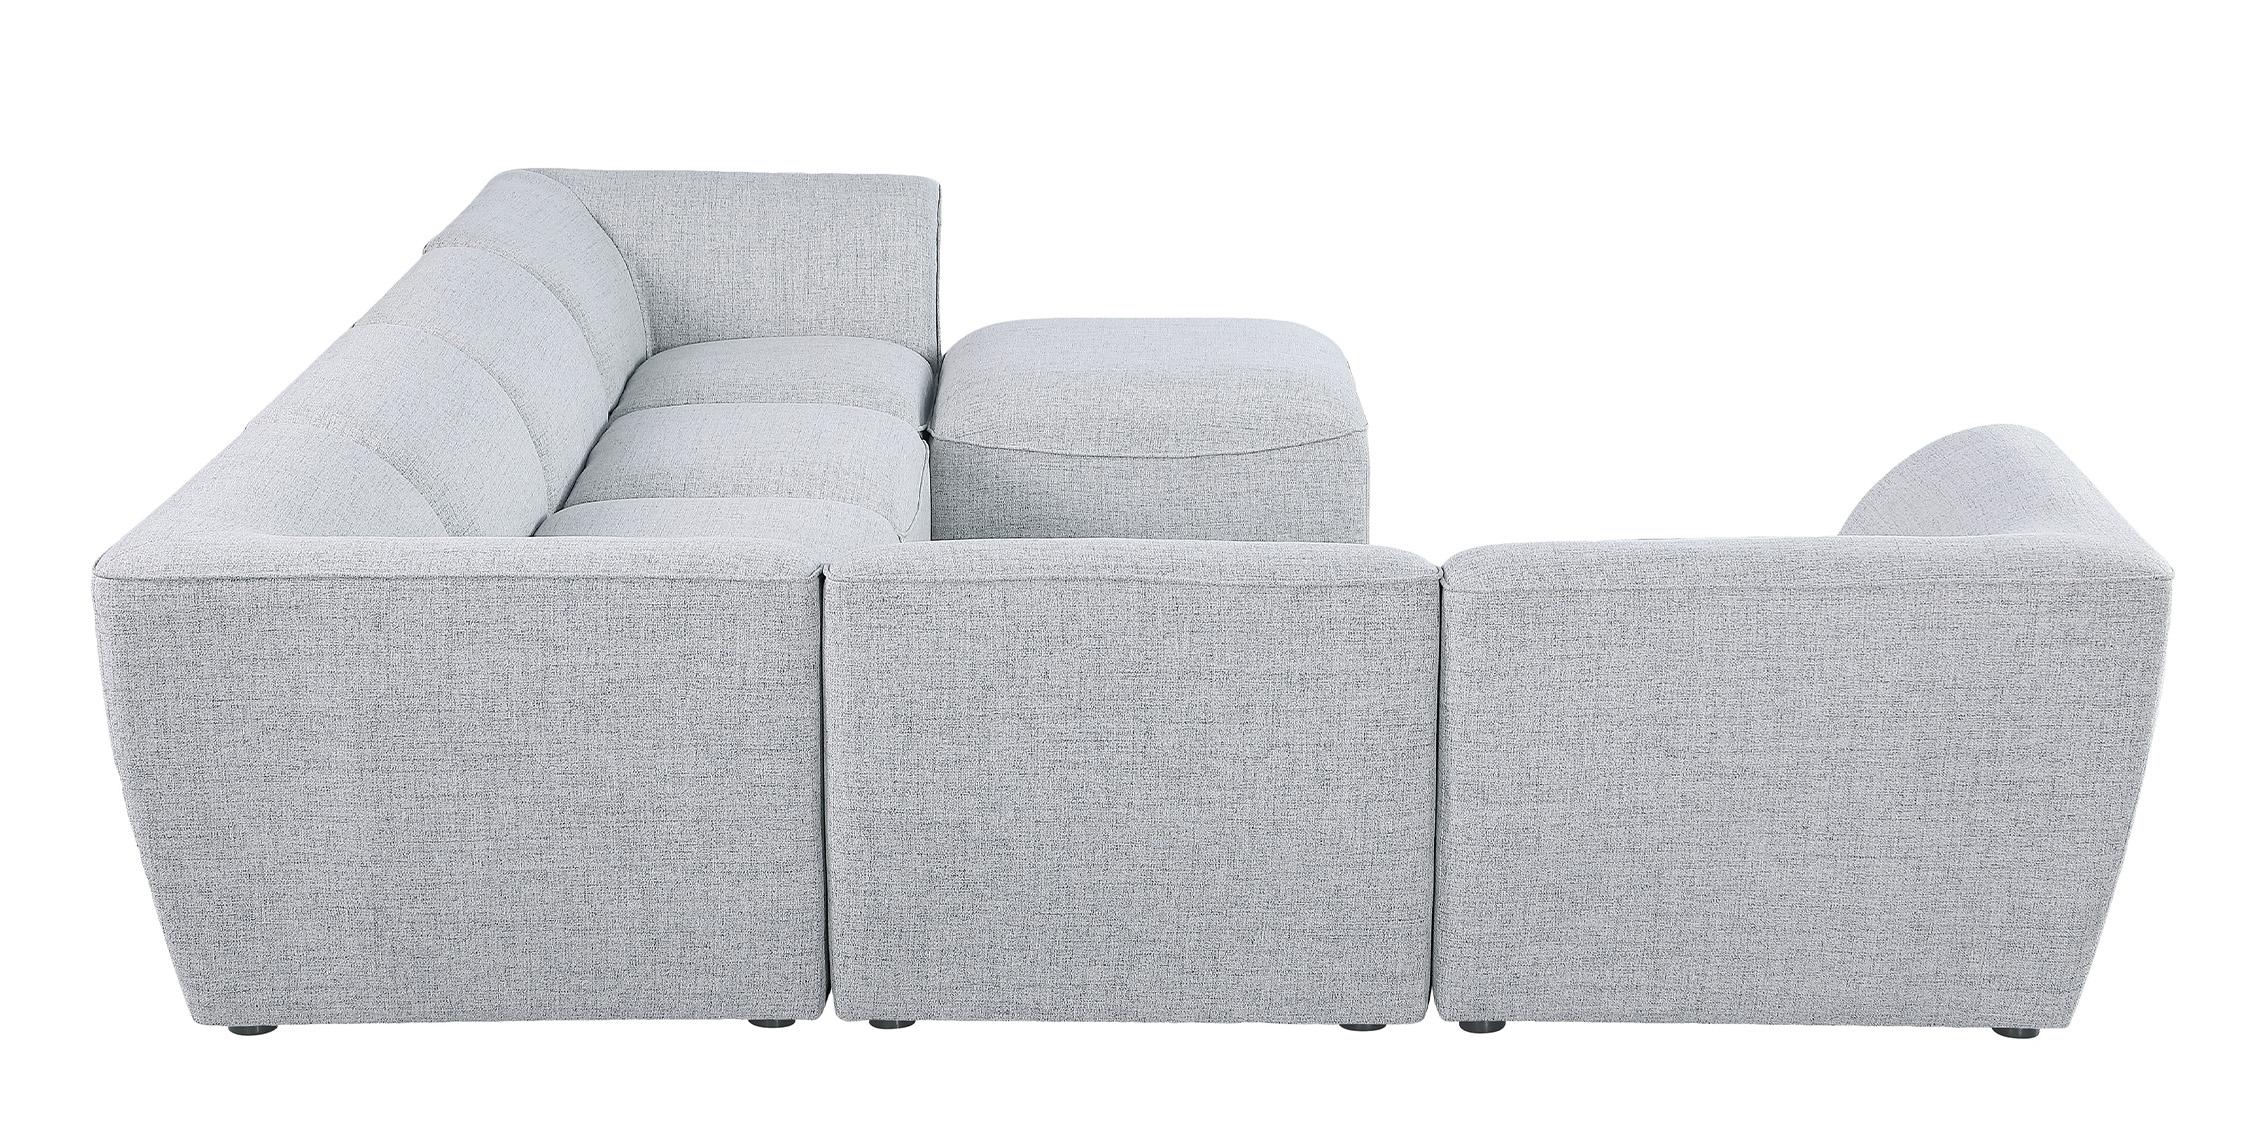 

    
683Grey-Sec7A Meridian Furniture Modular Sectional Sofa
